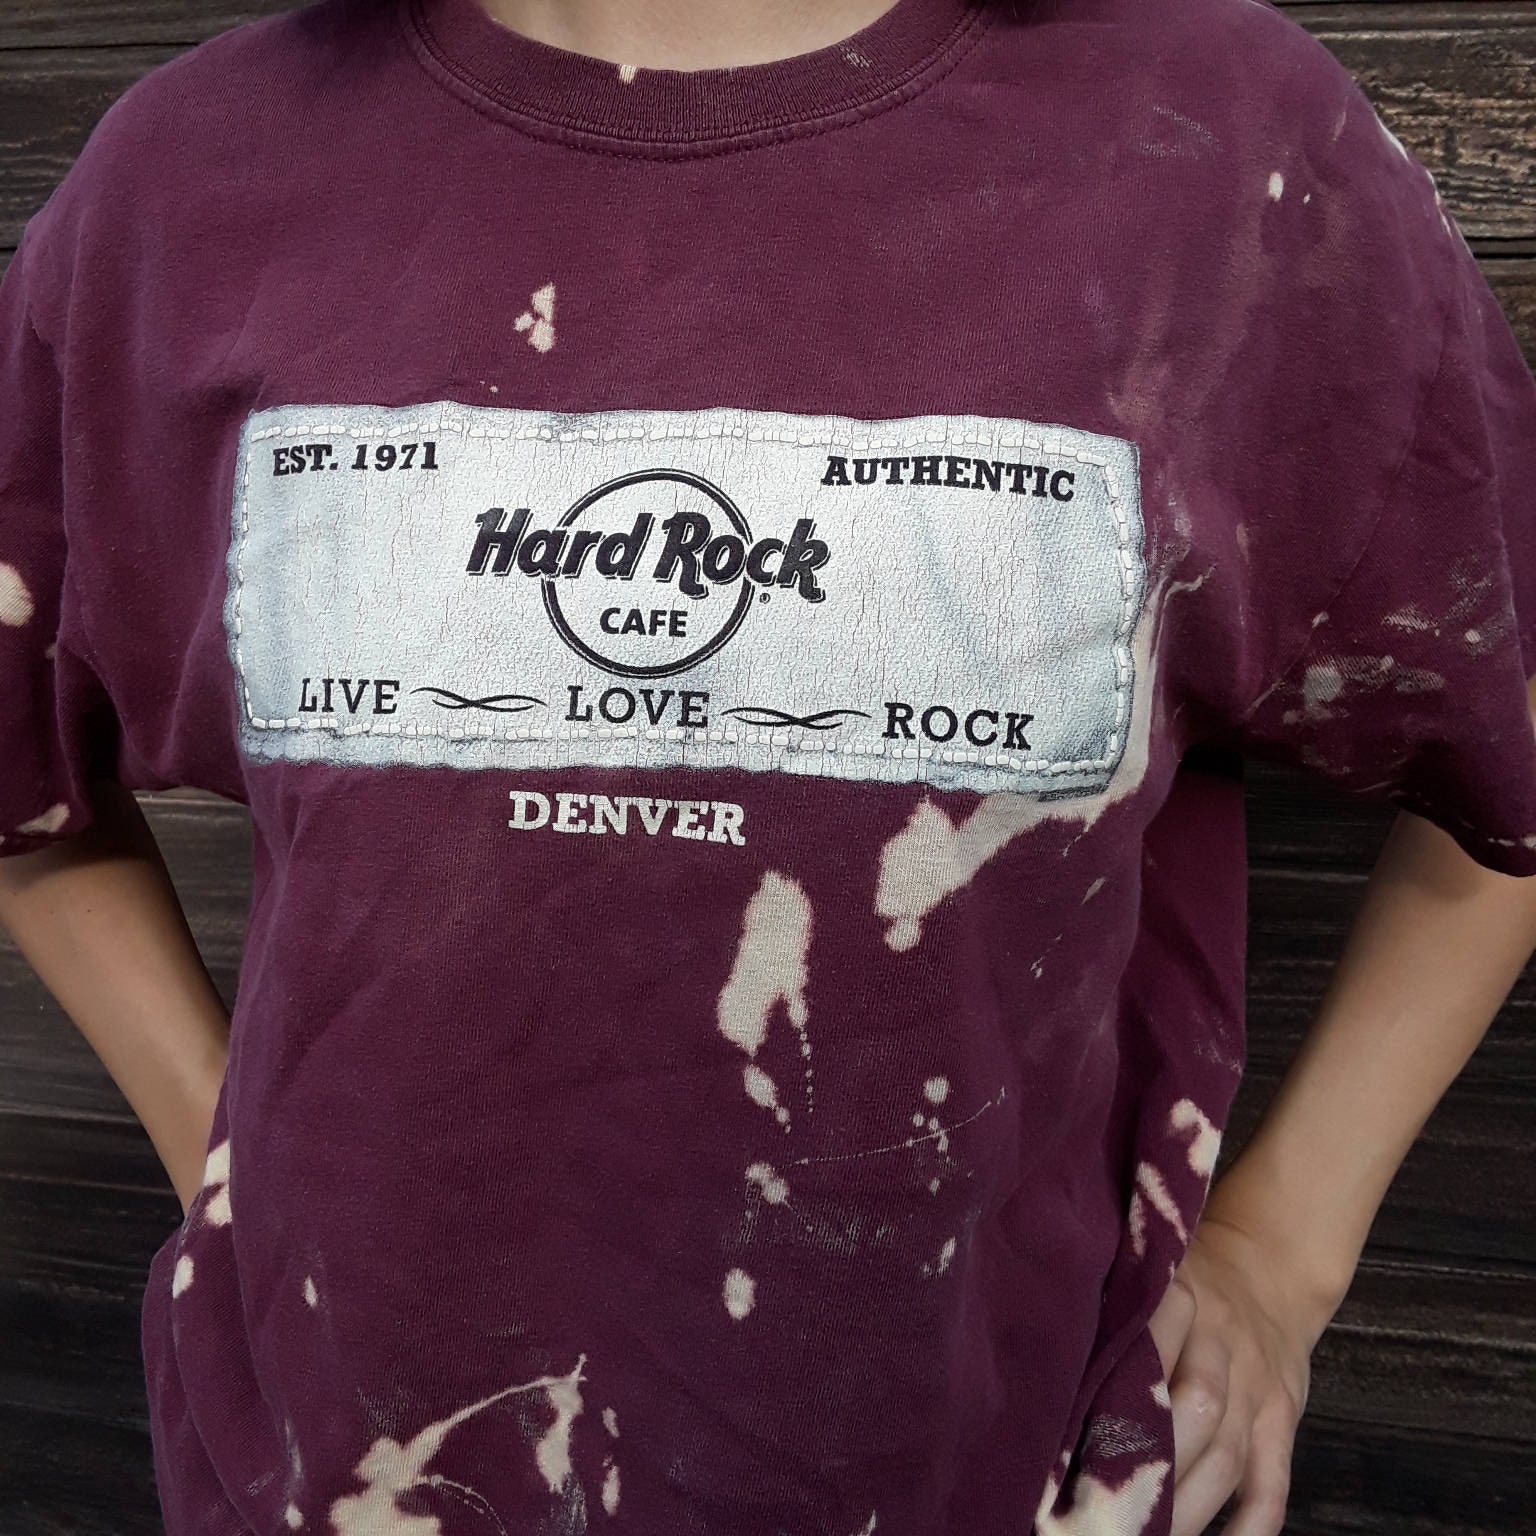 Hard Rock Cafe T Shirts Philippines Buyudum Cocuk Oldum - camo nike shirt roblox buyudum cocuk oldum